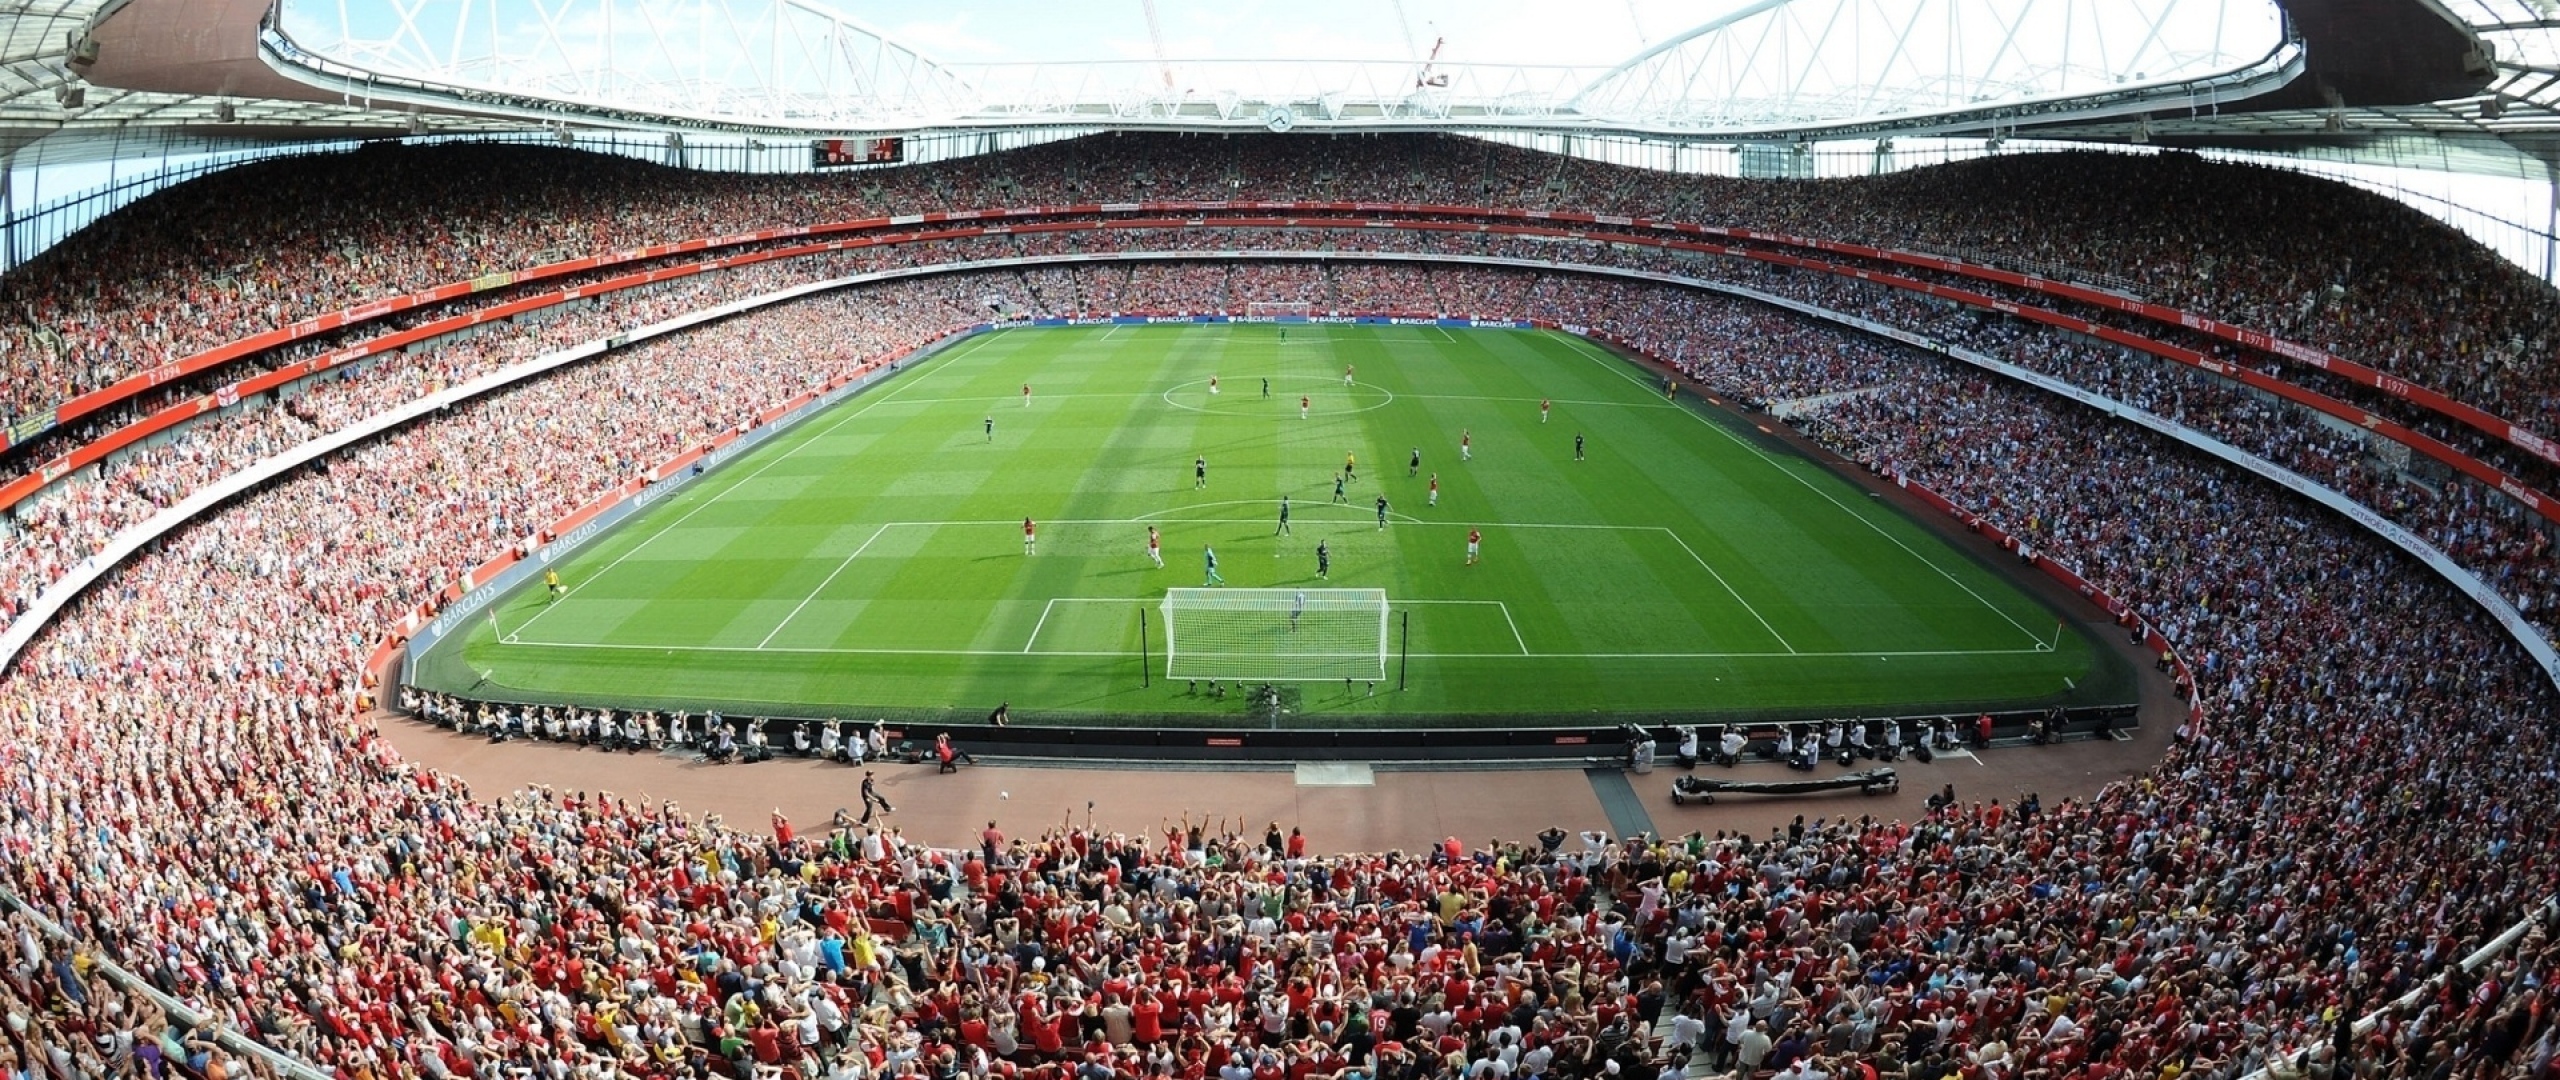 Download Wallpaper 2560x1080 Emirates stadium, Stadium, Emirates ...